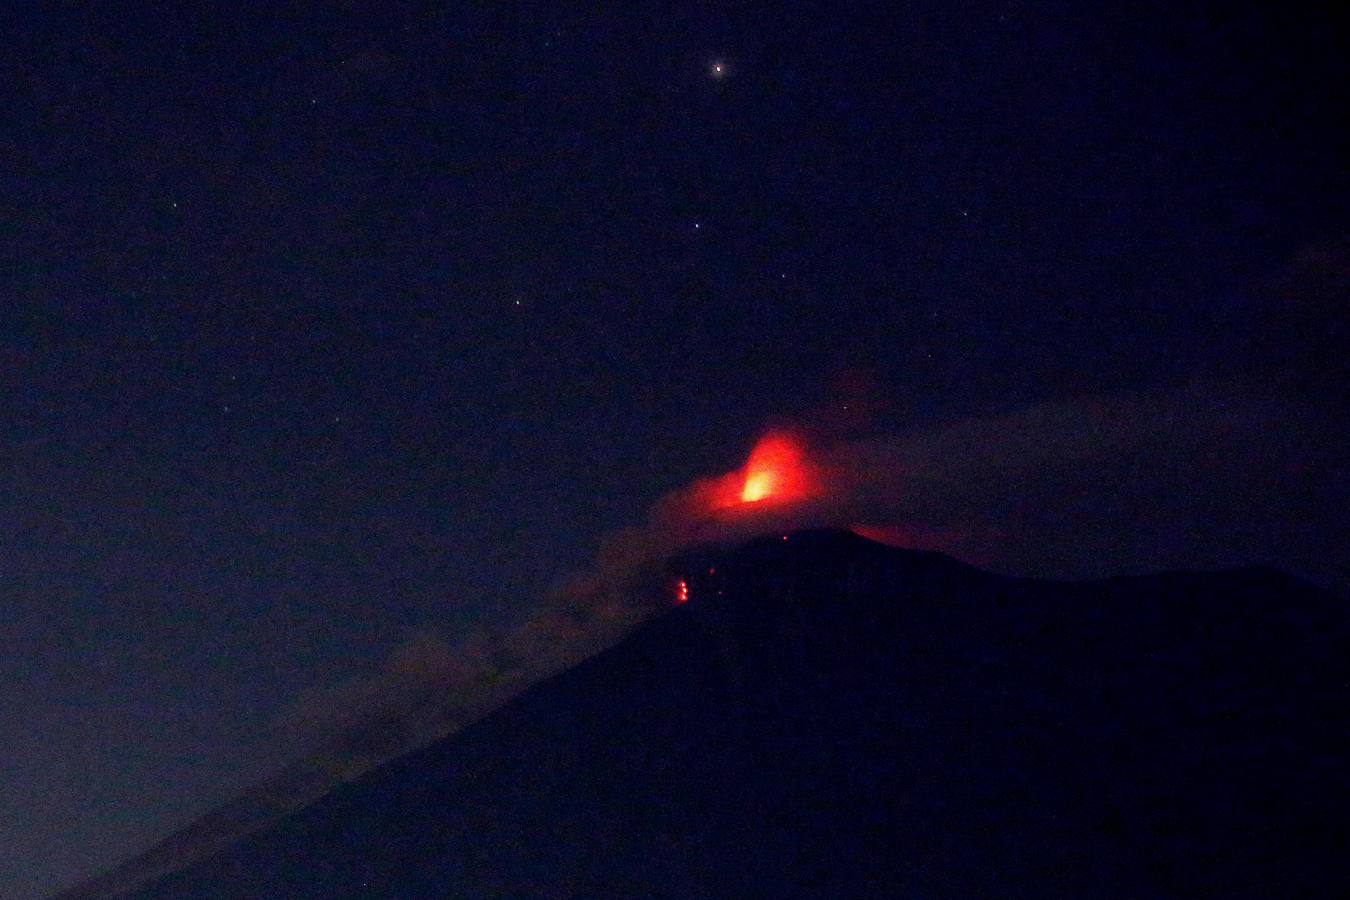 Fotos: Volcán en erupción